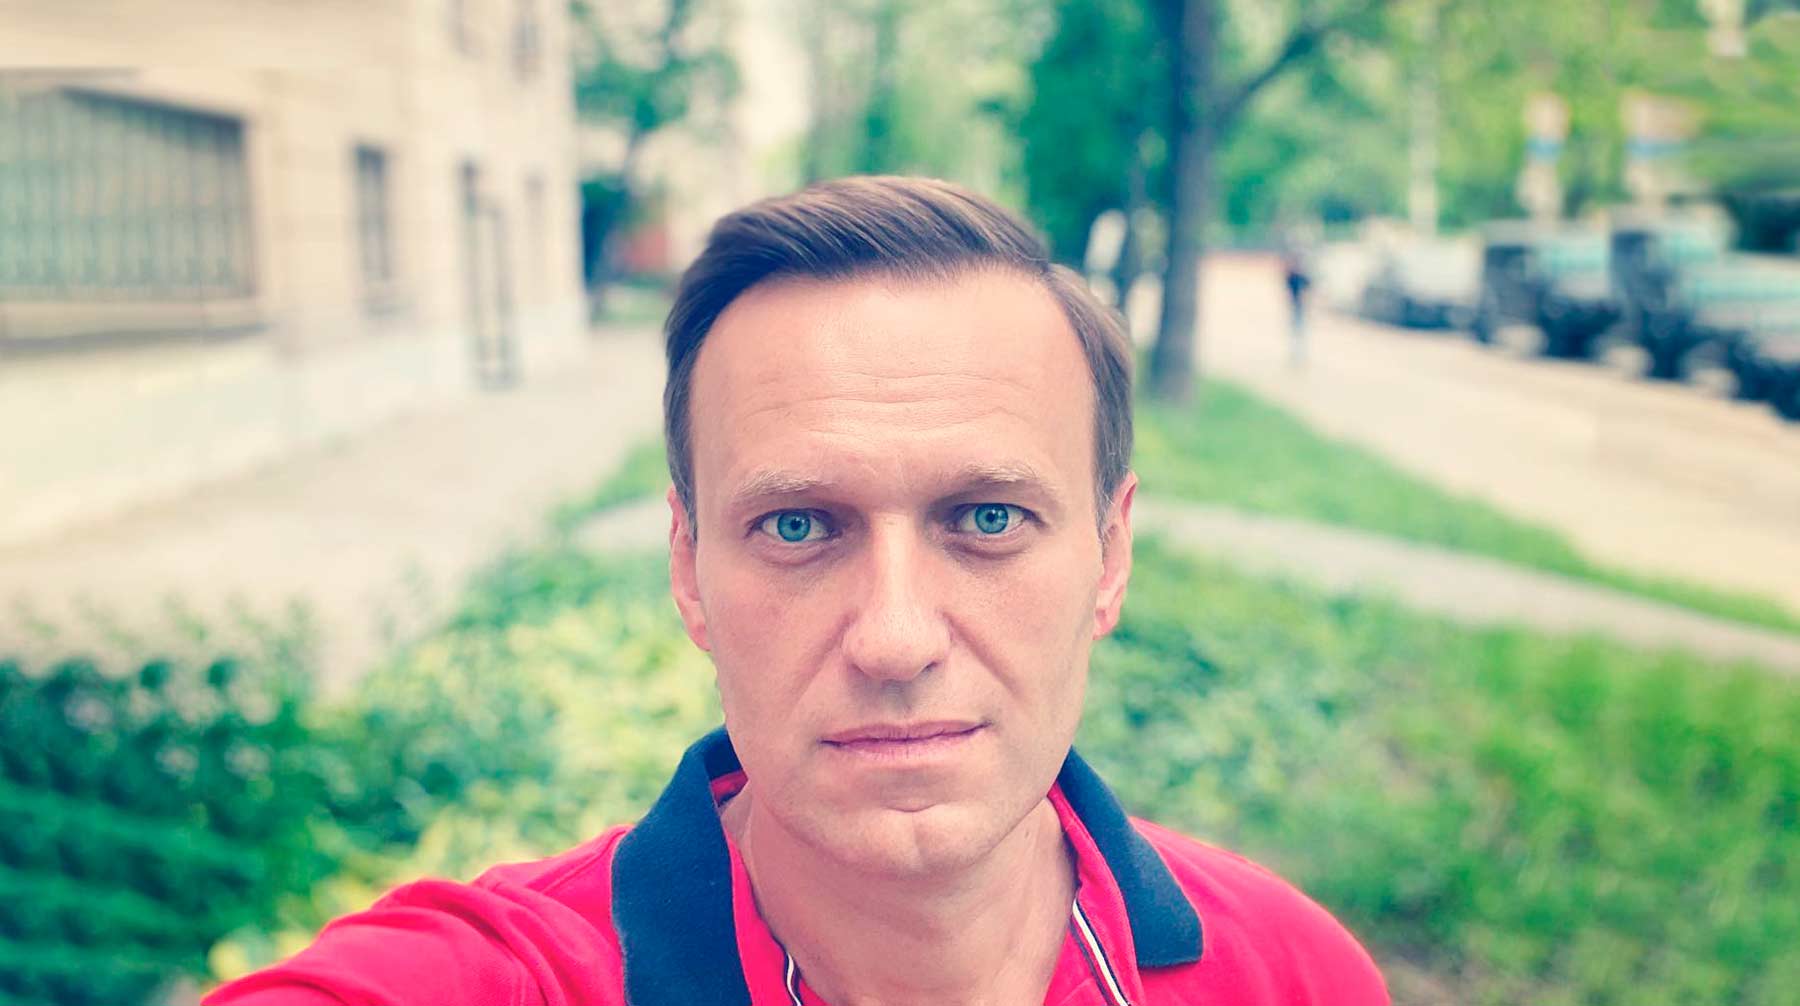 Оппозиционер получил в СИЗО сборник шуток и с помощью одной из них неприлично пошутил над прокурором Фроловой Алексей Навальный